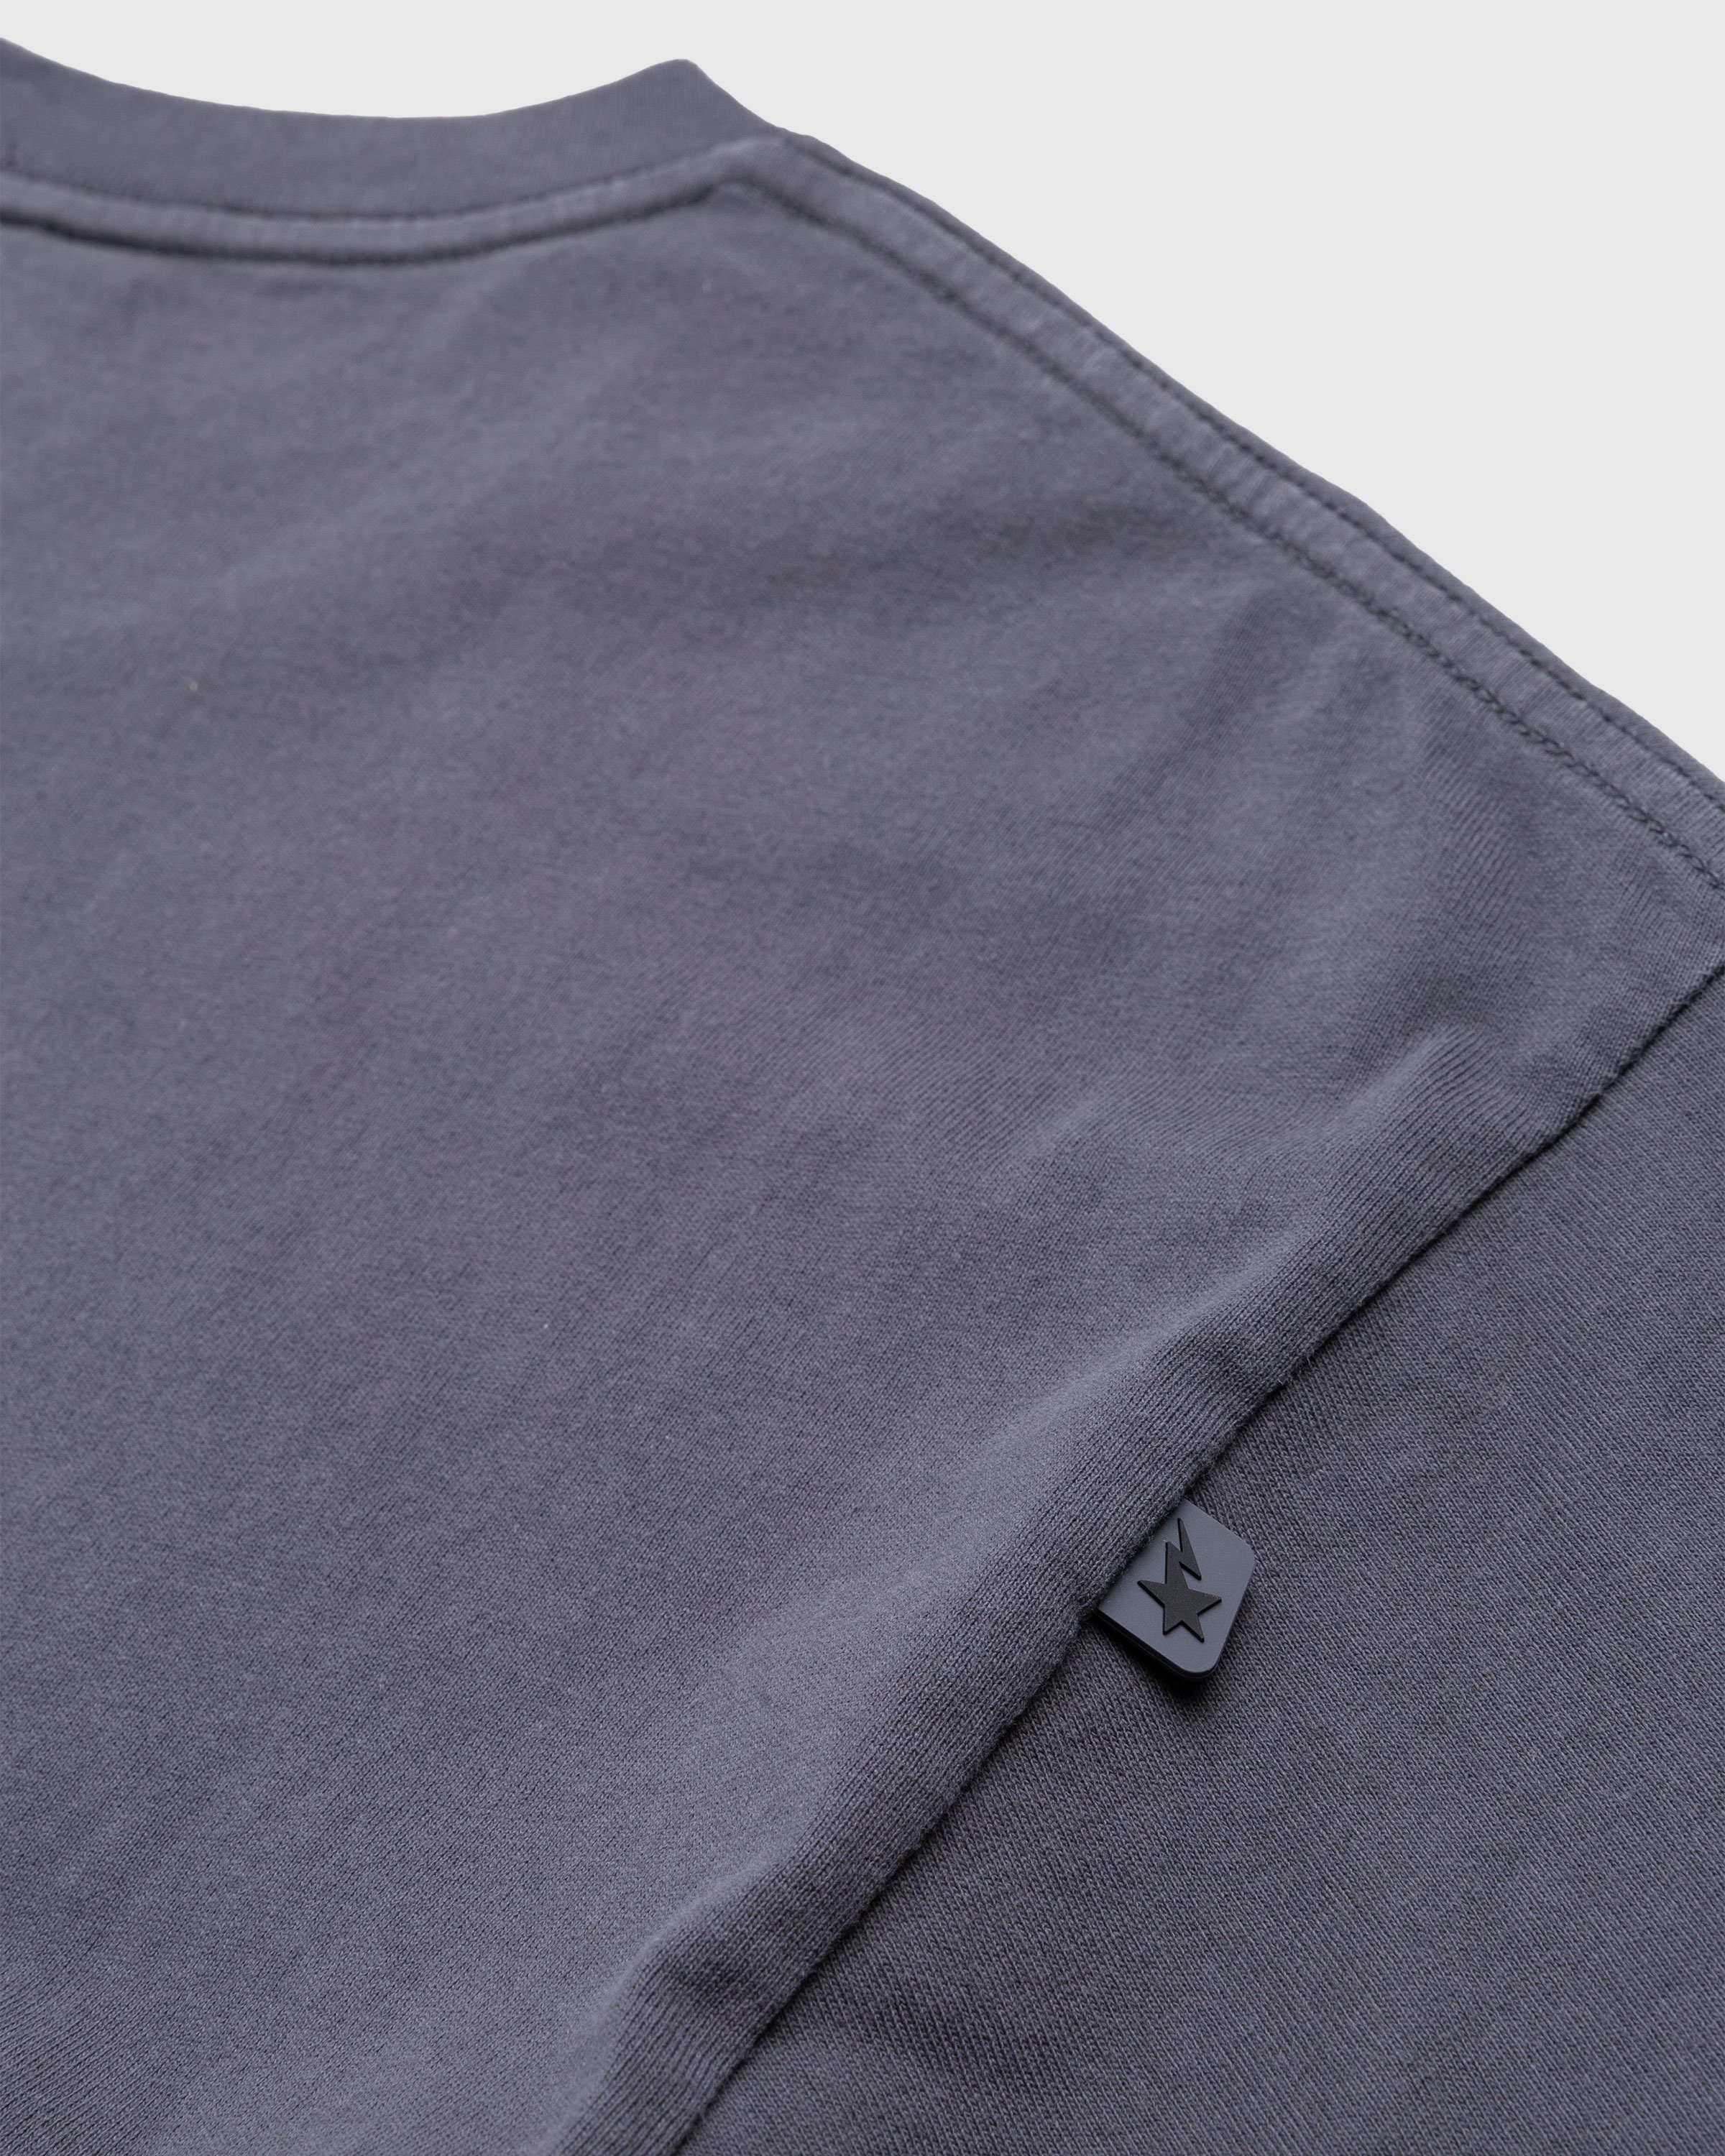 BAPE x Highsnobiety - Heavy Washed T-Shirt Charcoal - Clothing - Grey - Image 5